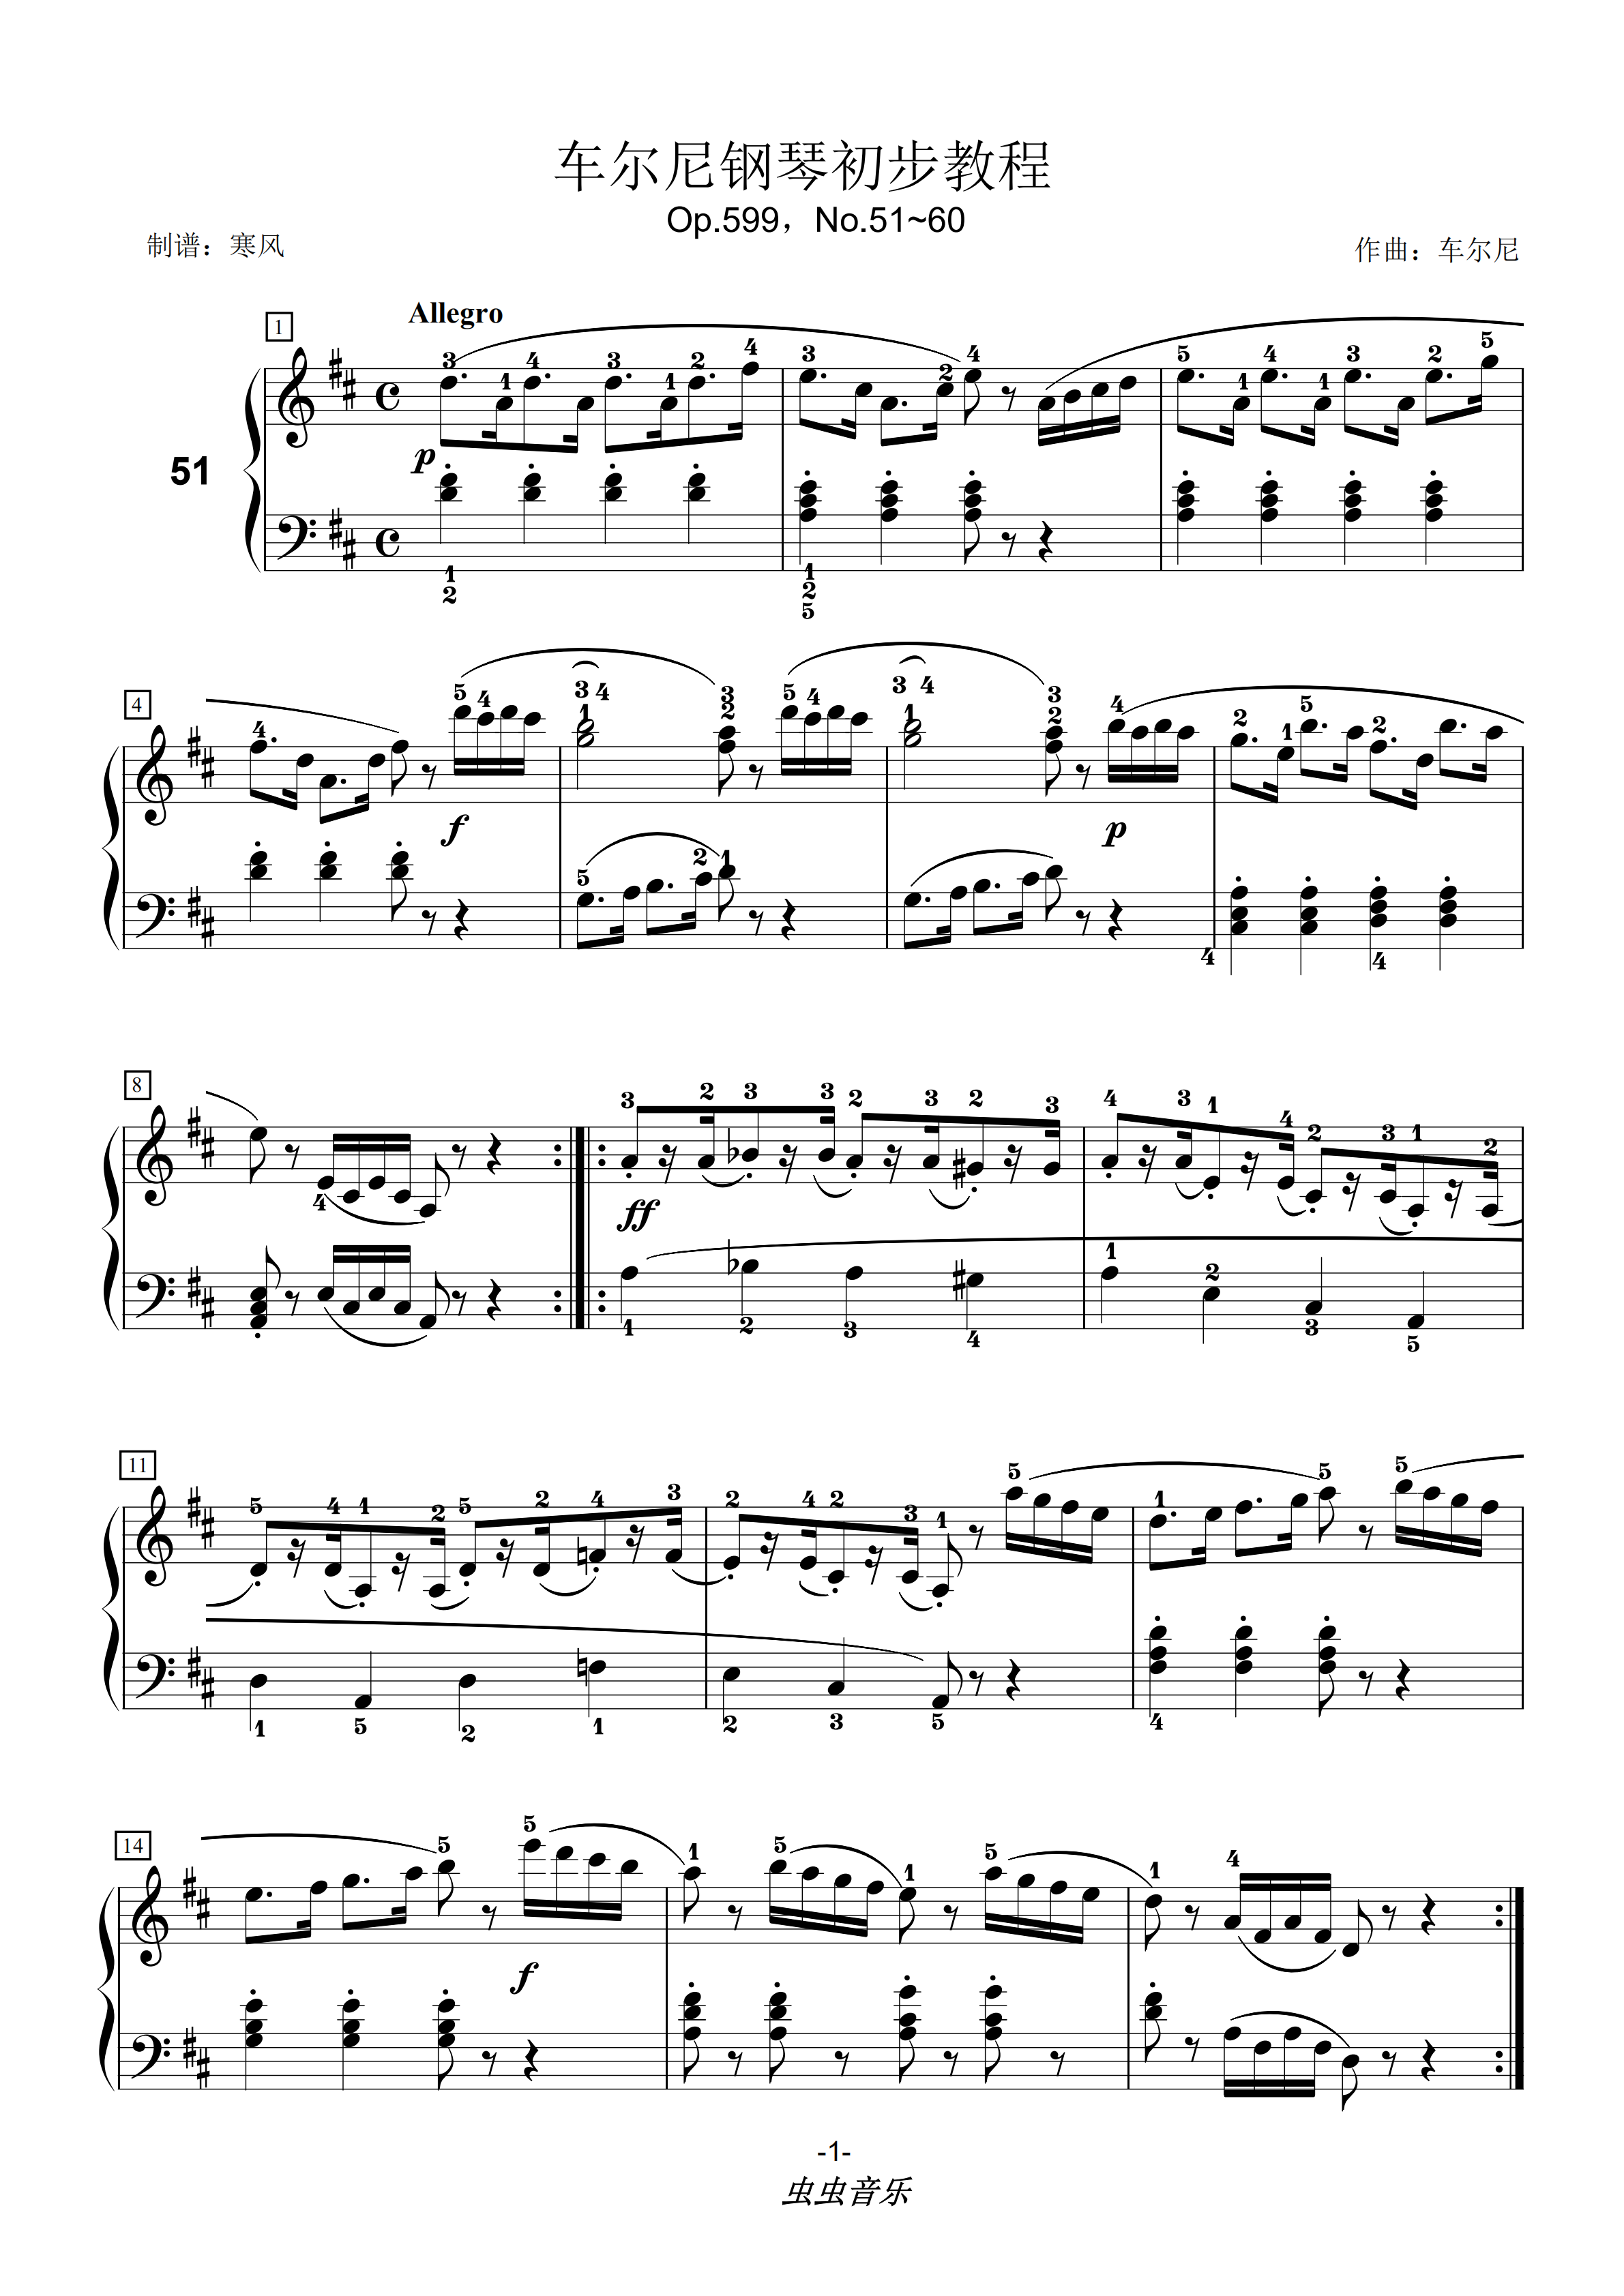 首页 钢琴谱库 车尔尼599第51~60(附指法)